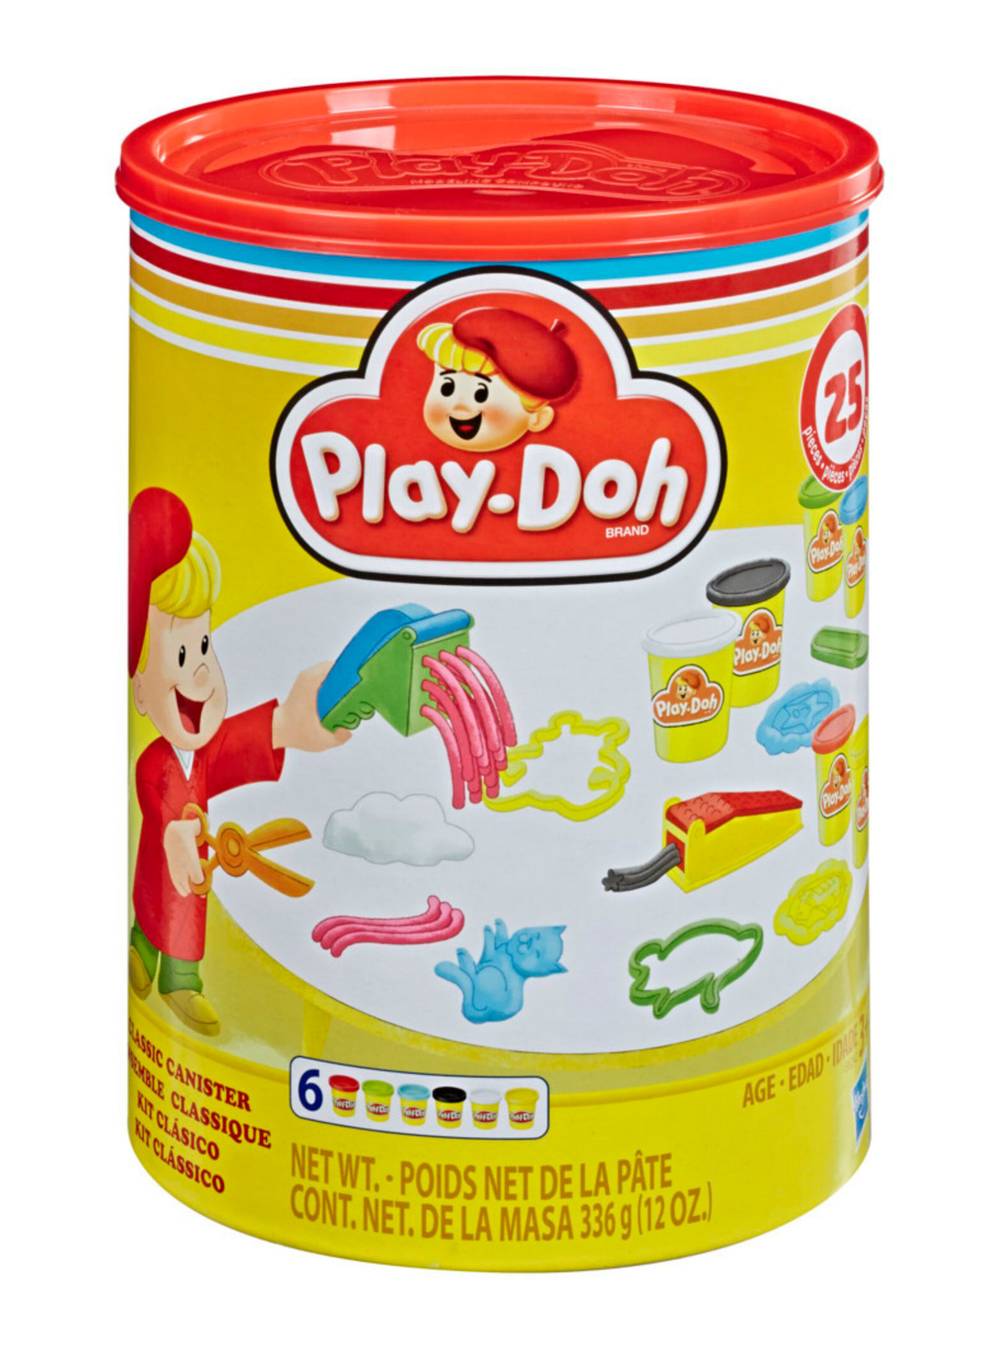 Play-doh masas y plastilinas kit clásico